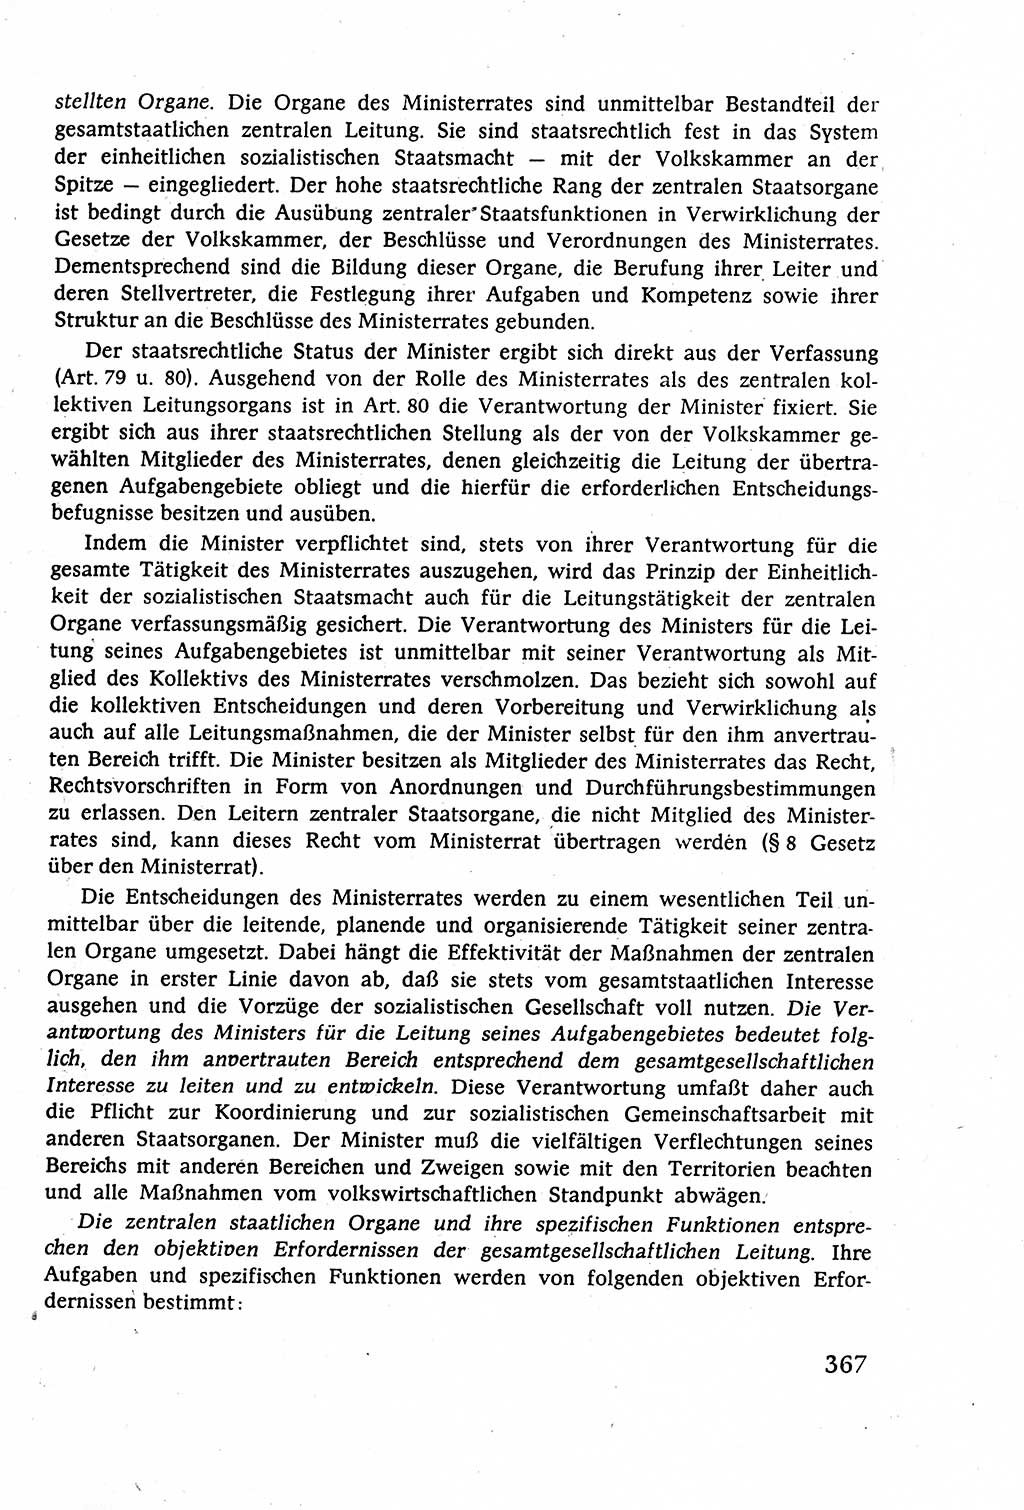 Staatsrecht der DDR (Deutsche Demokratische Republik), Lehrbuch 1977, Seite 367 (St.-R. DDR Lb. 1977, S. 367)